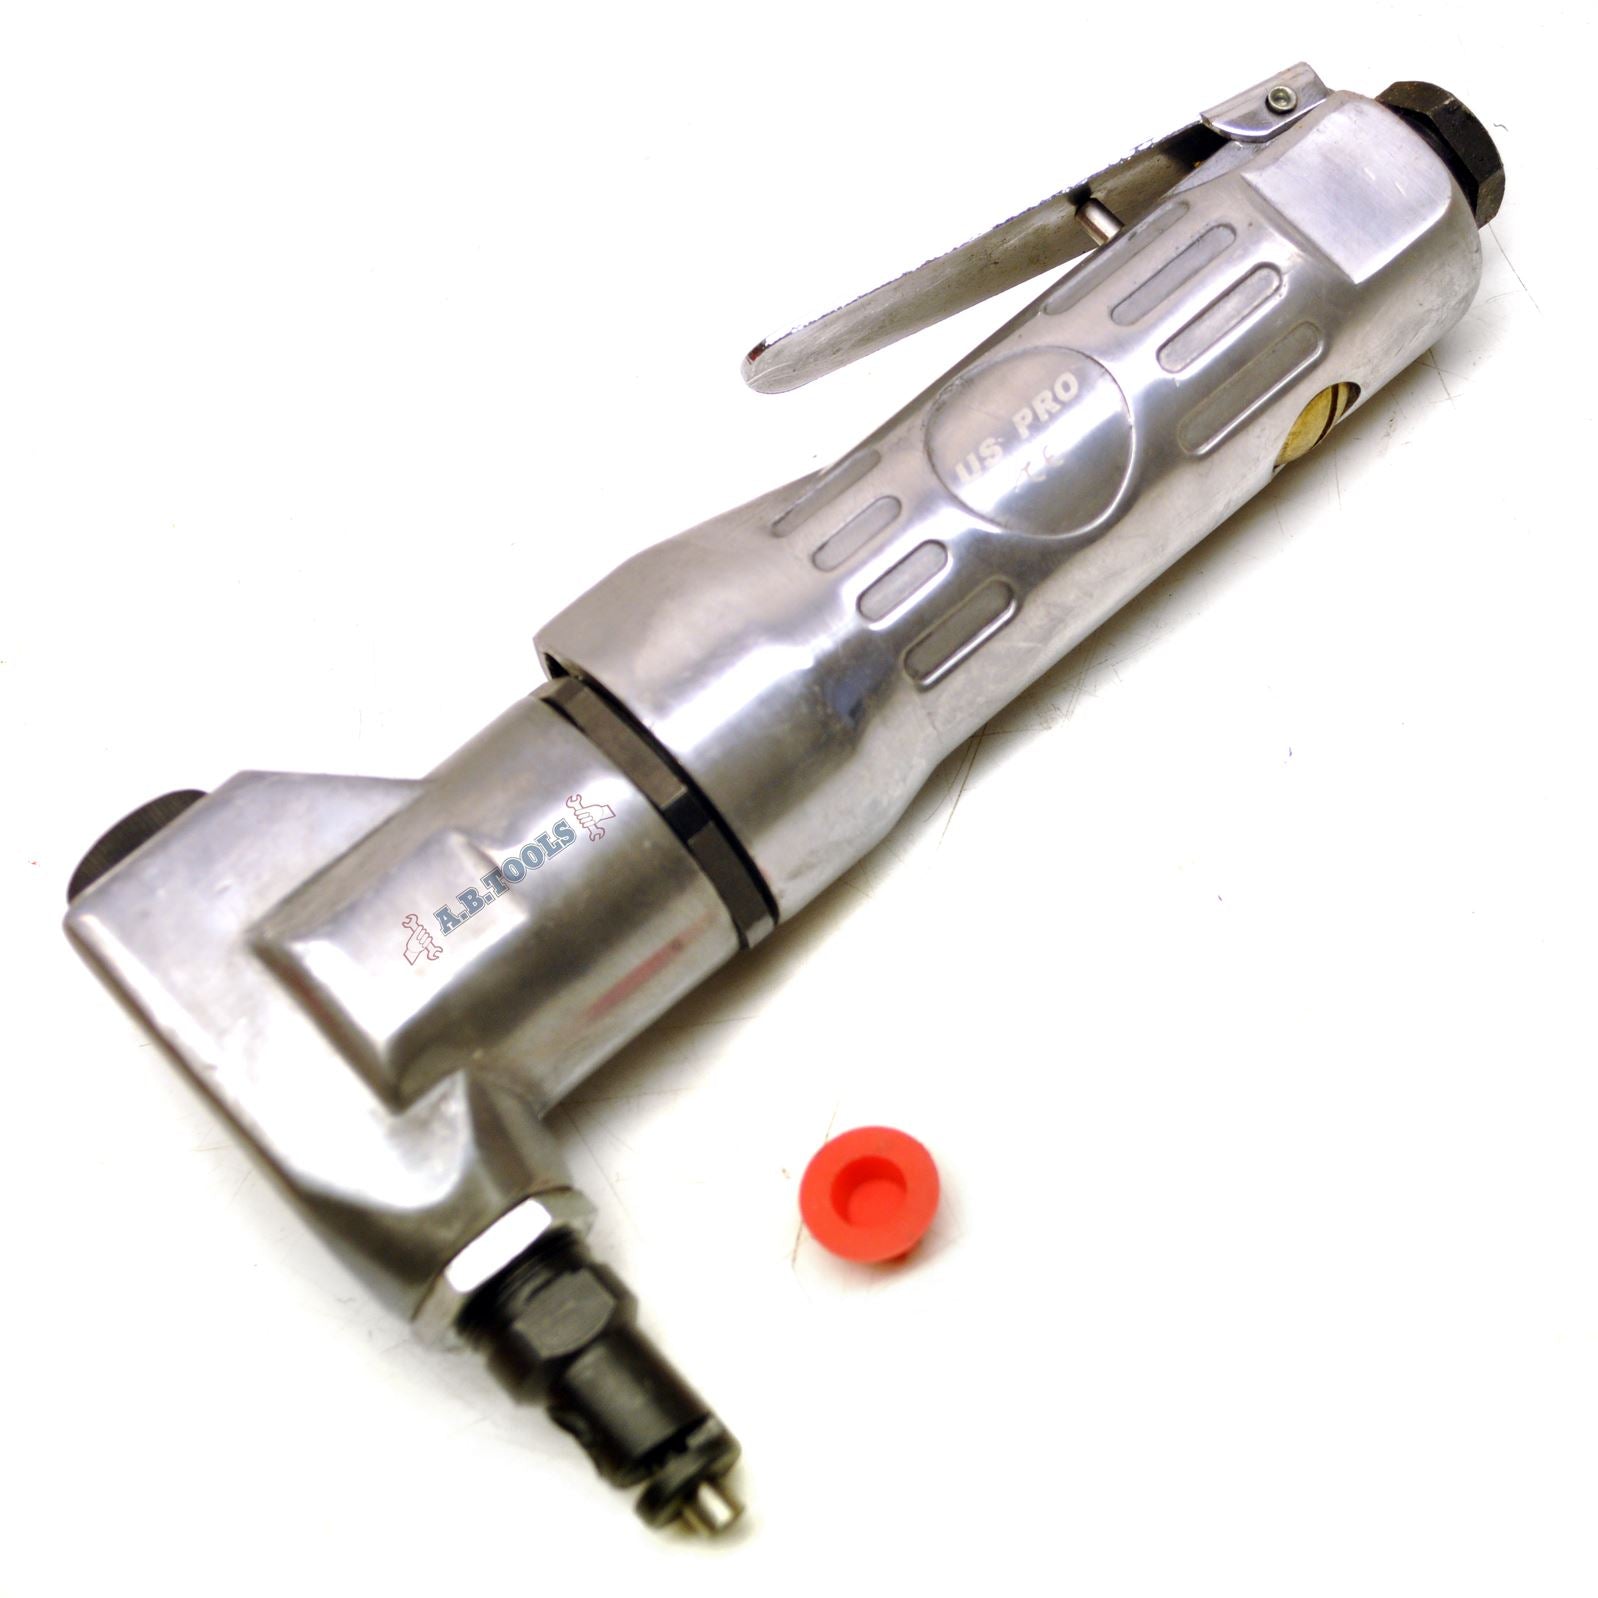 Air nibbler / Sheet metal cutter / body repair tool up to 1.5mm BERGEN AT561